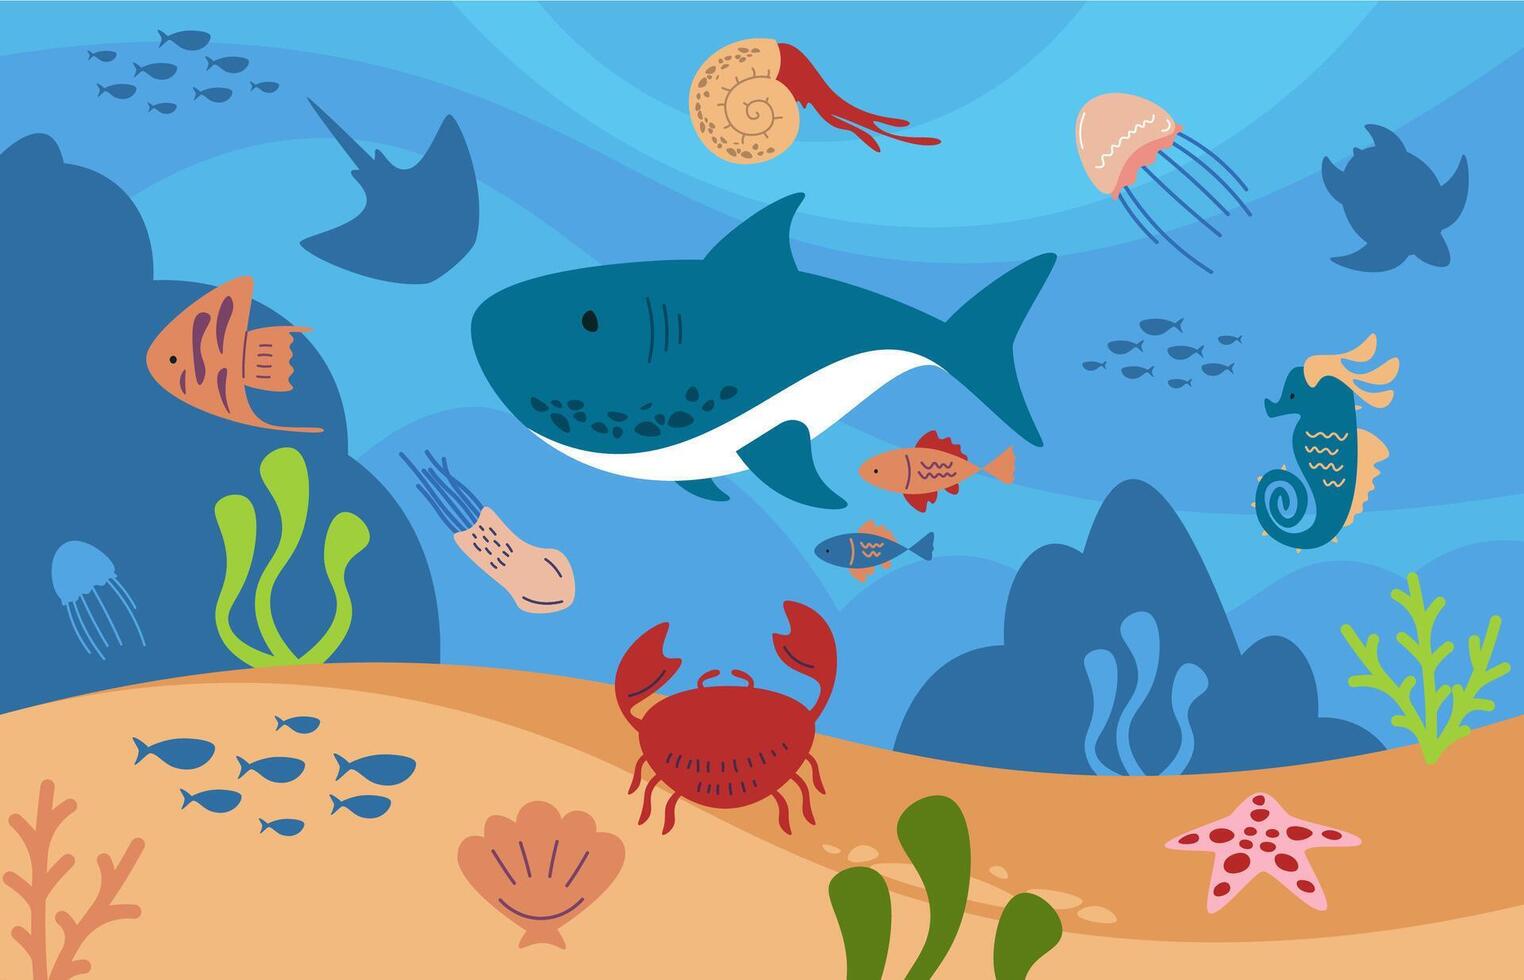 dibujos animados submarino paisaje con animales mar fondo con pez, pulpo, Medusa, cangrejo, algas y algas marinas. vector marina fauna silvestre ilustración